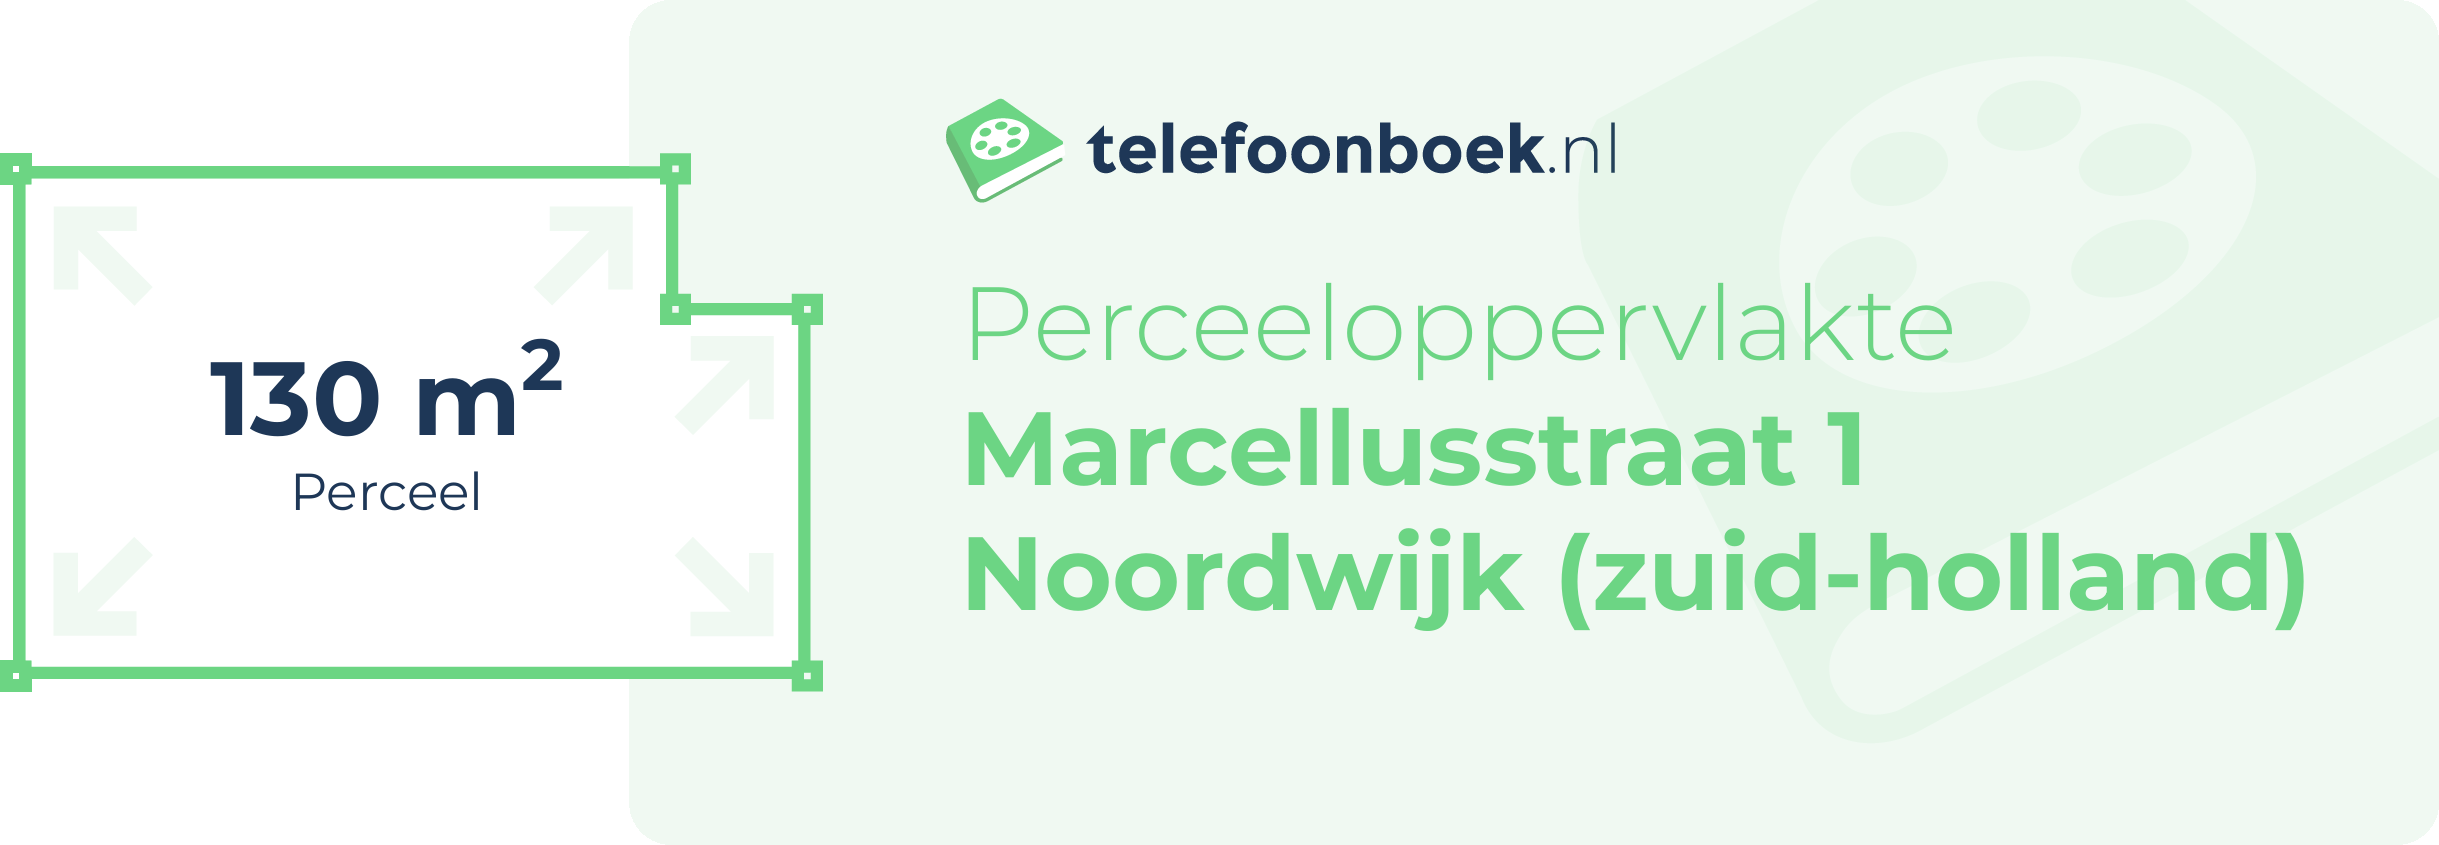 Perceeloppervlakte Marcellusstraat 1 Noordwijk (Zuid-Holland)